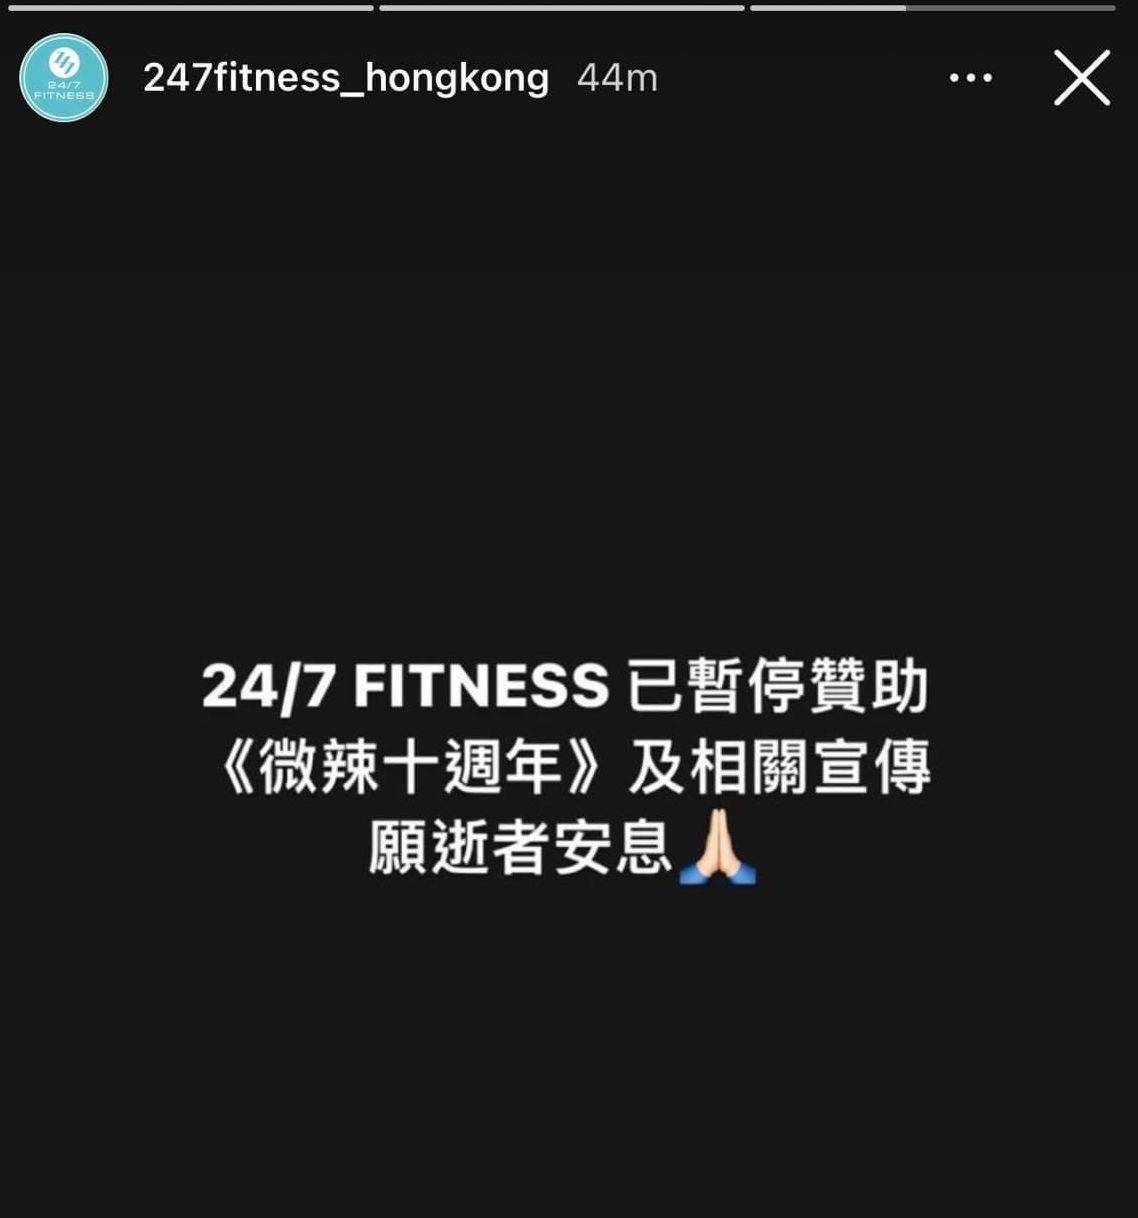 微辣 卡特 微辣 霍哥 霍哥 微辣 健身公司24/7 FITNESS宣布暫停贊助及相關宣傳.